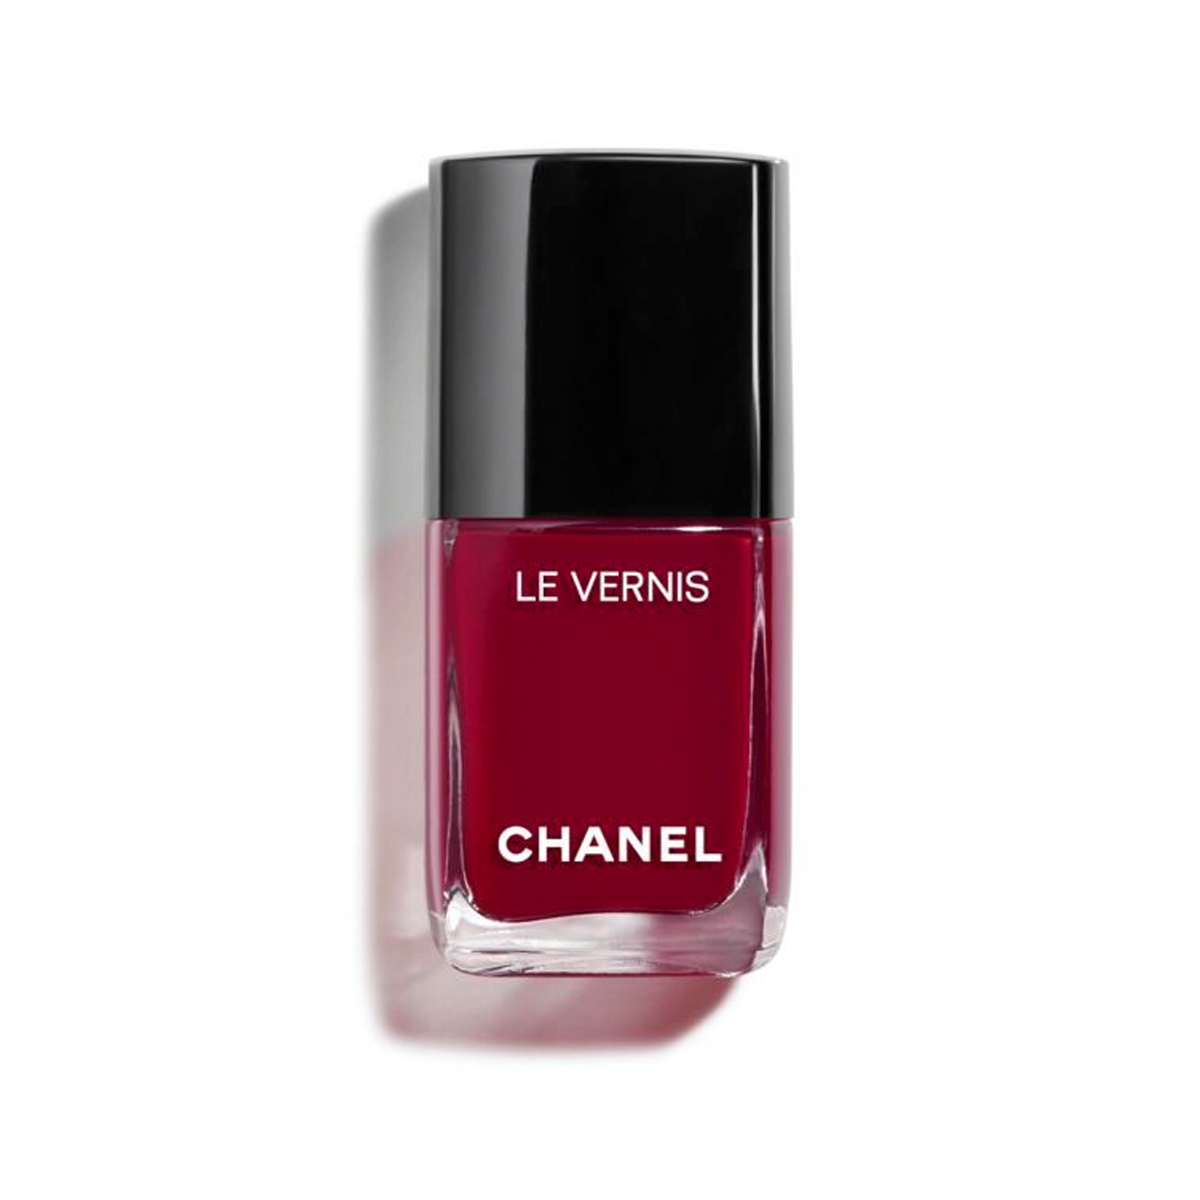 Chanel Le Vernis Longwear Nail Colour in Emblématique